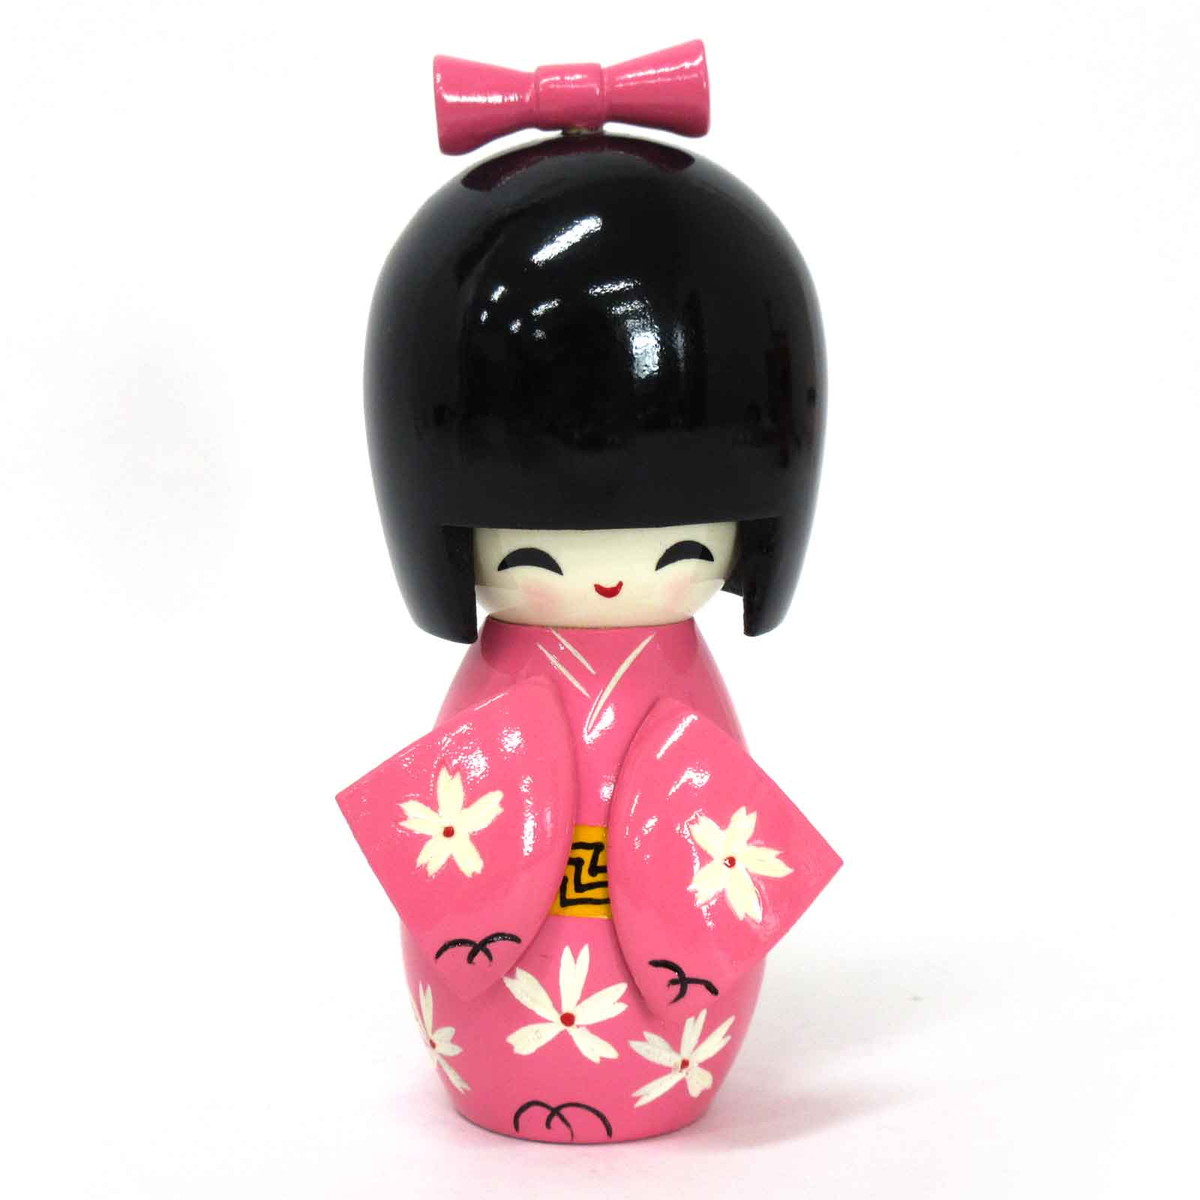 こけし 着物 日本人形 木製 こけし人形 着物 14cmサイズ 木製